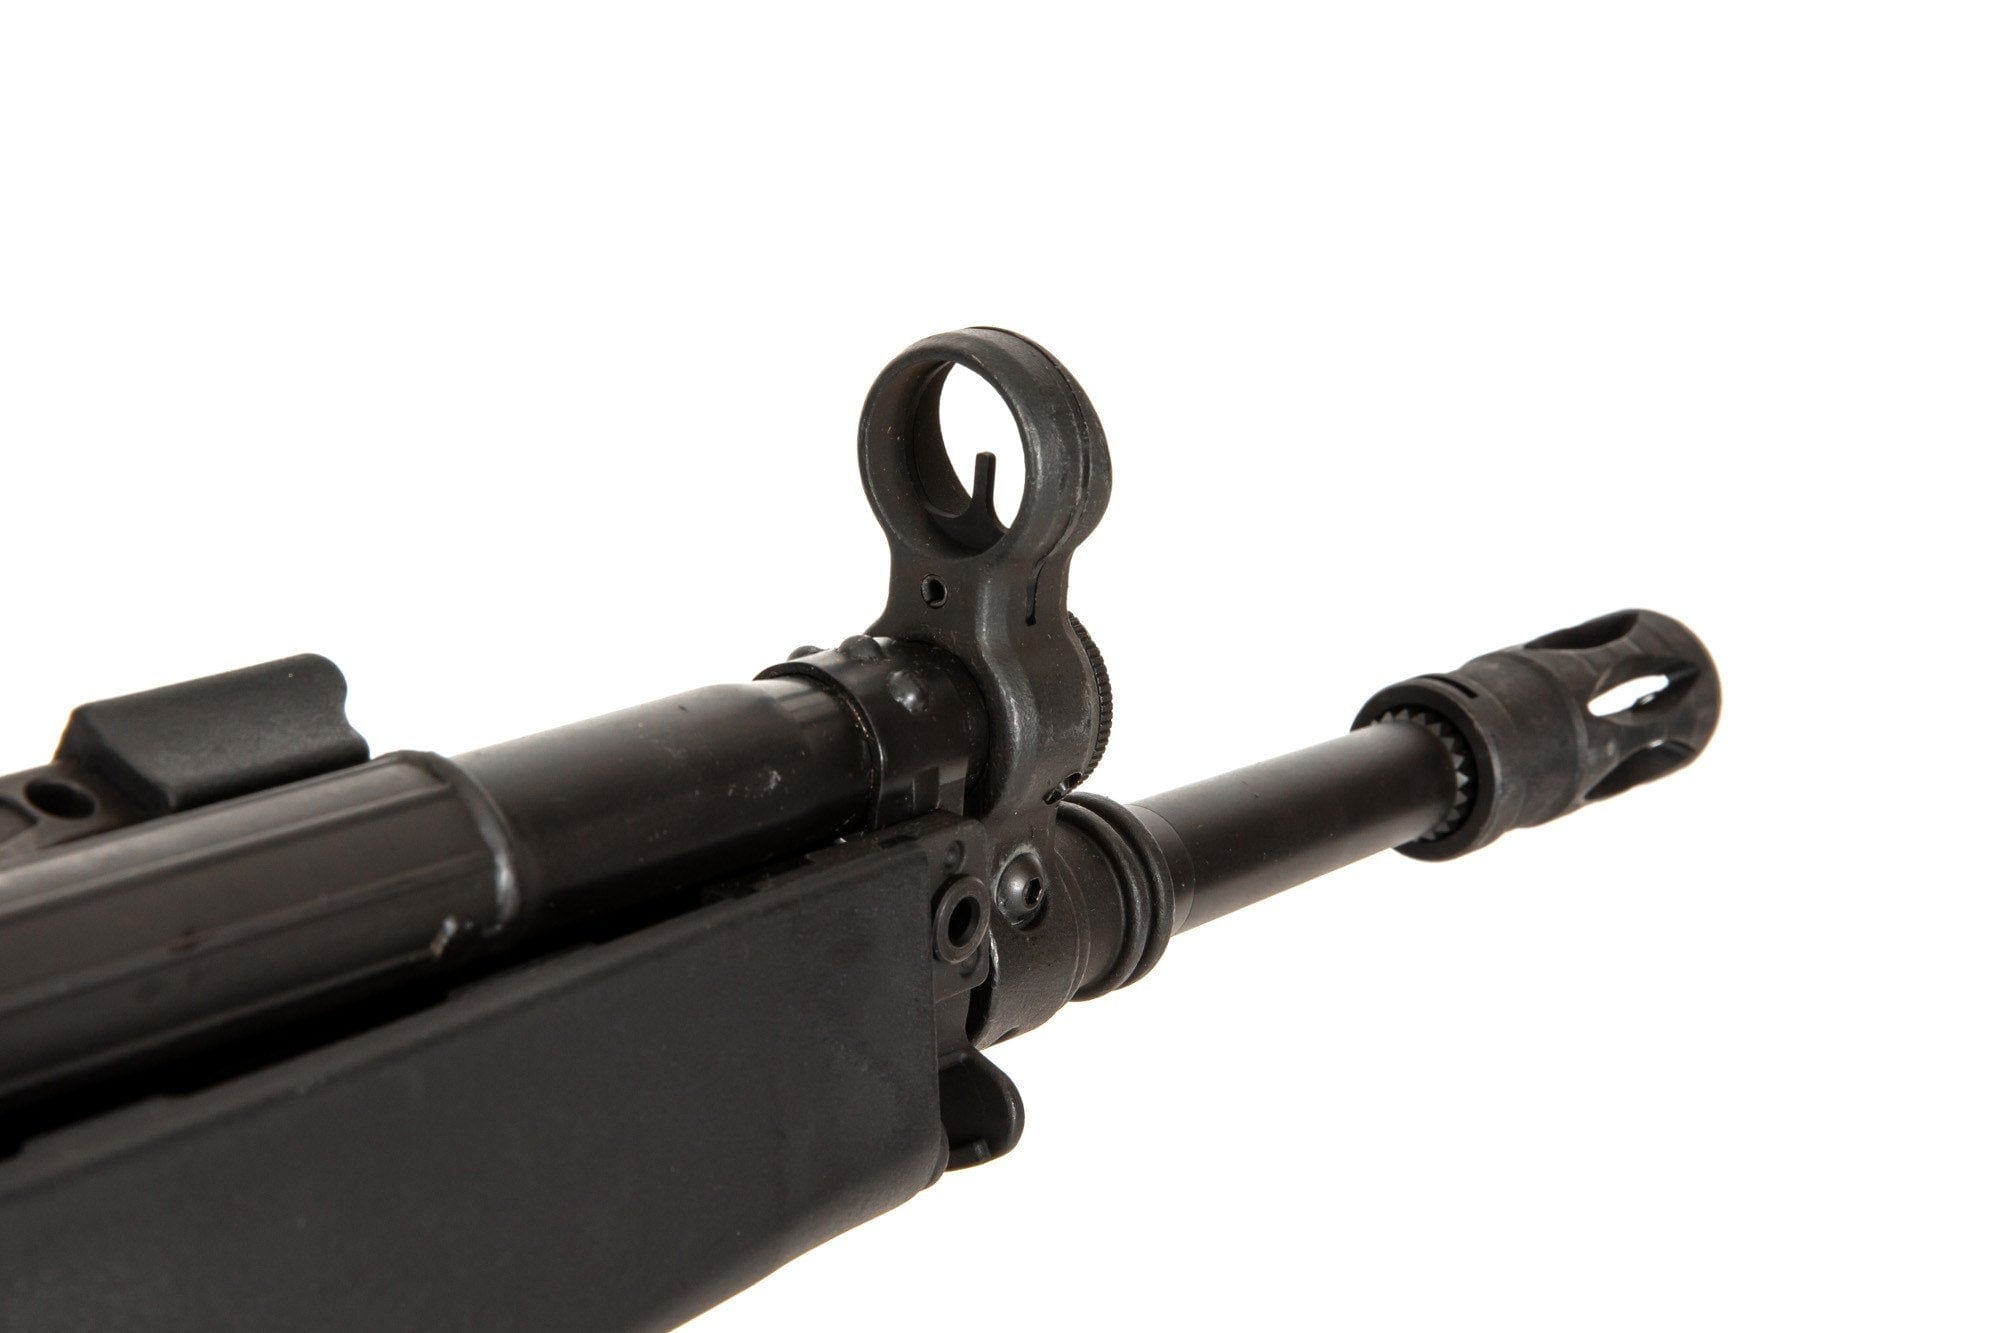 G33A2 EBB Assault Rifle Replica (LK33A2)